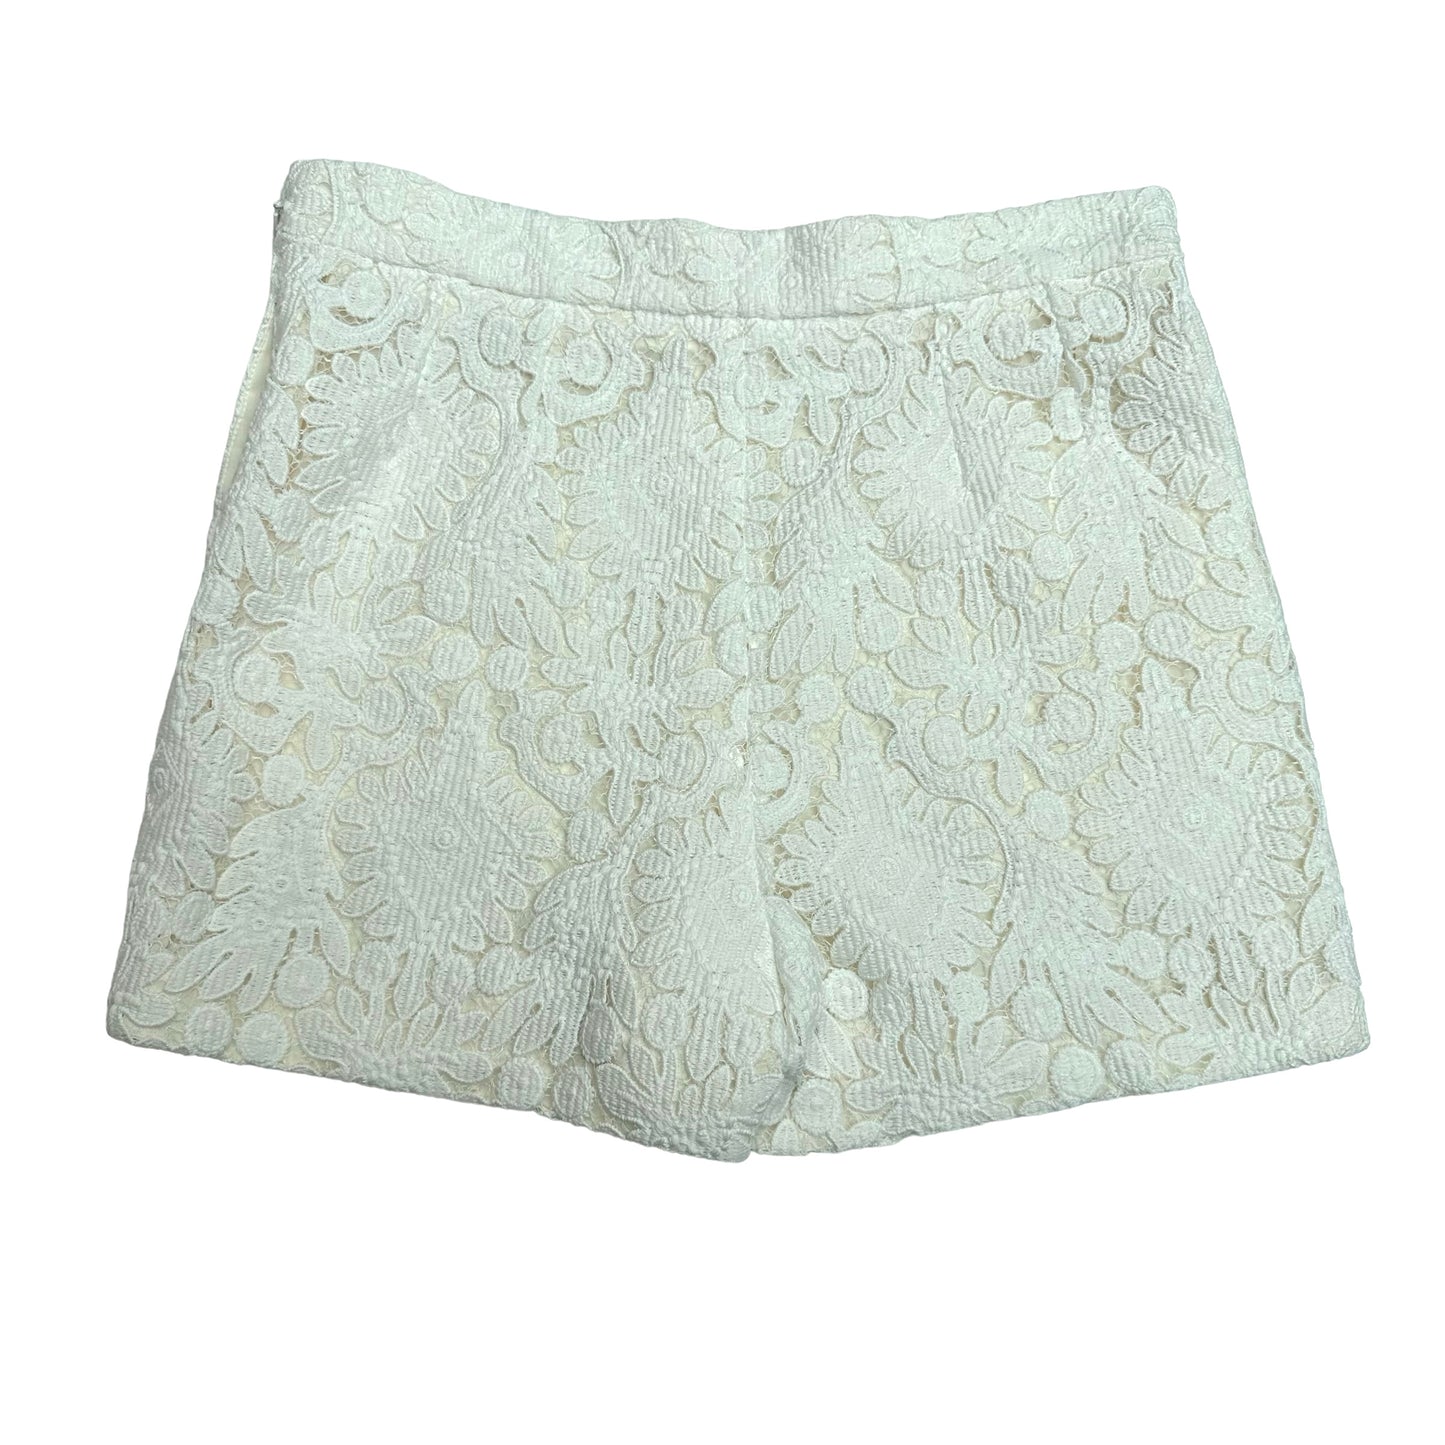 White Lace Mini Shorts - S